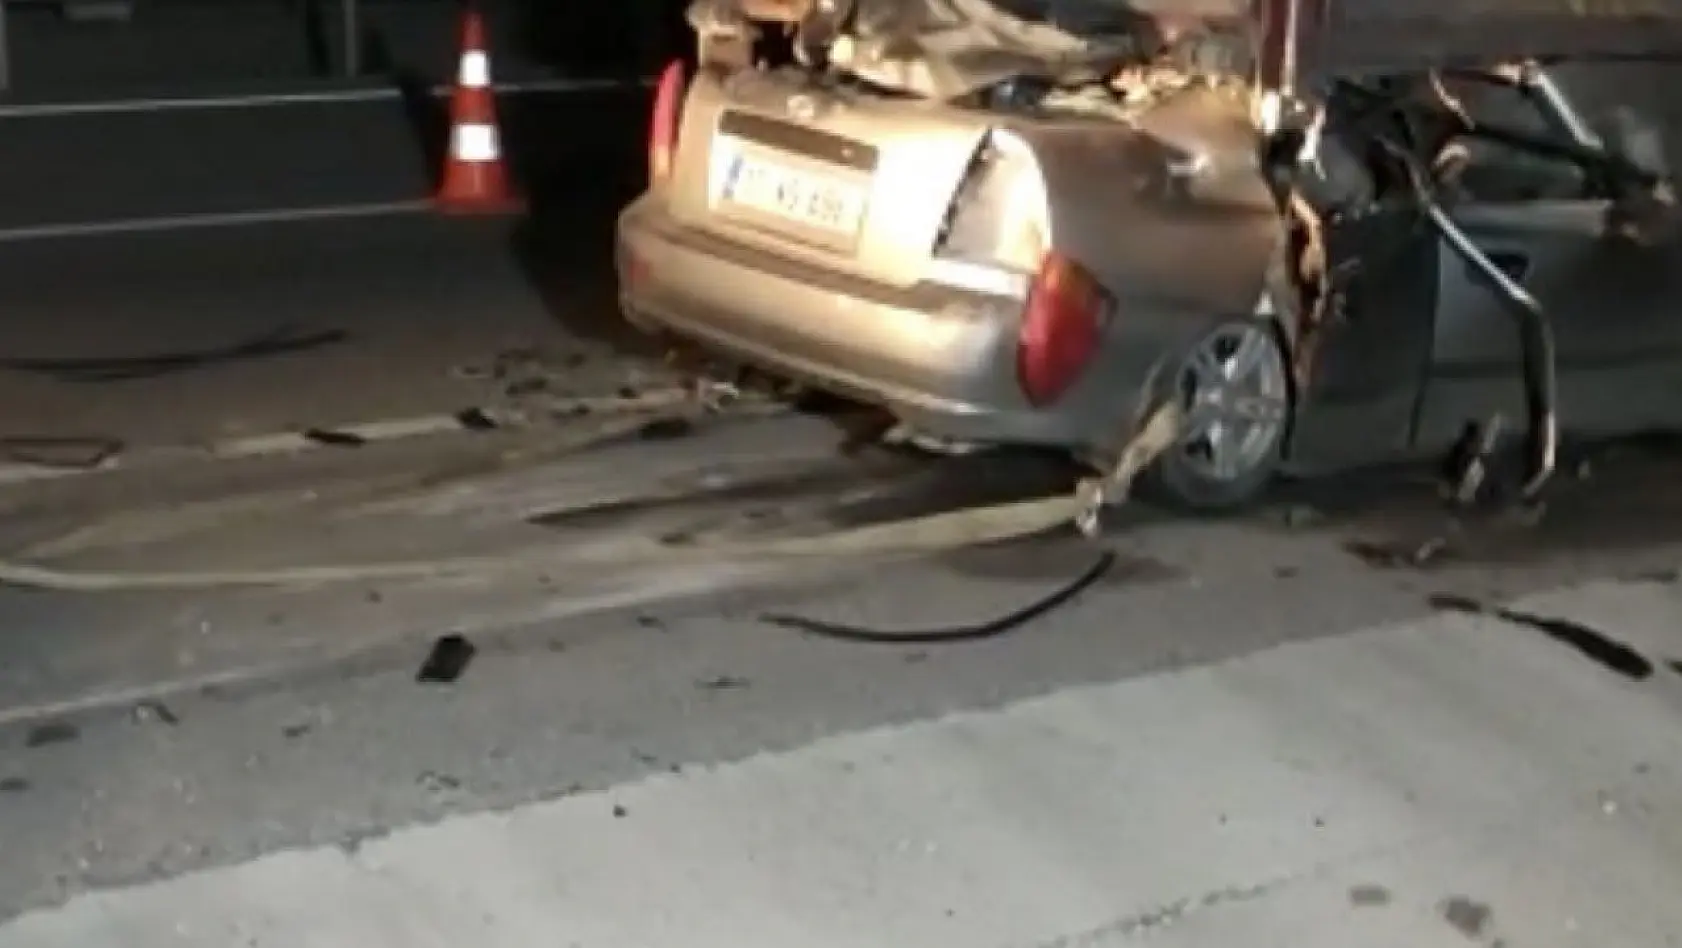 Çanakkale'de TIR'ın altına giren otomobilin sürücüsü hayatını kaybetti